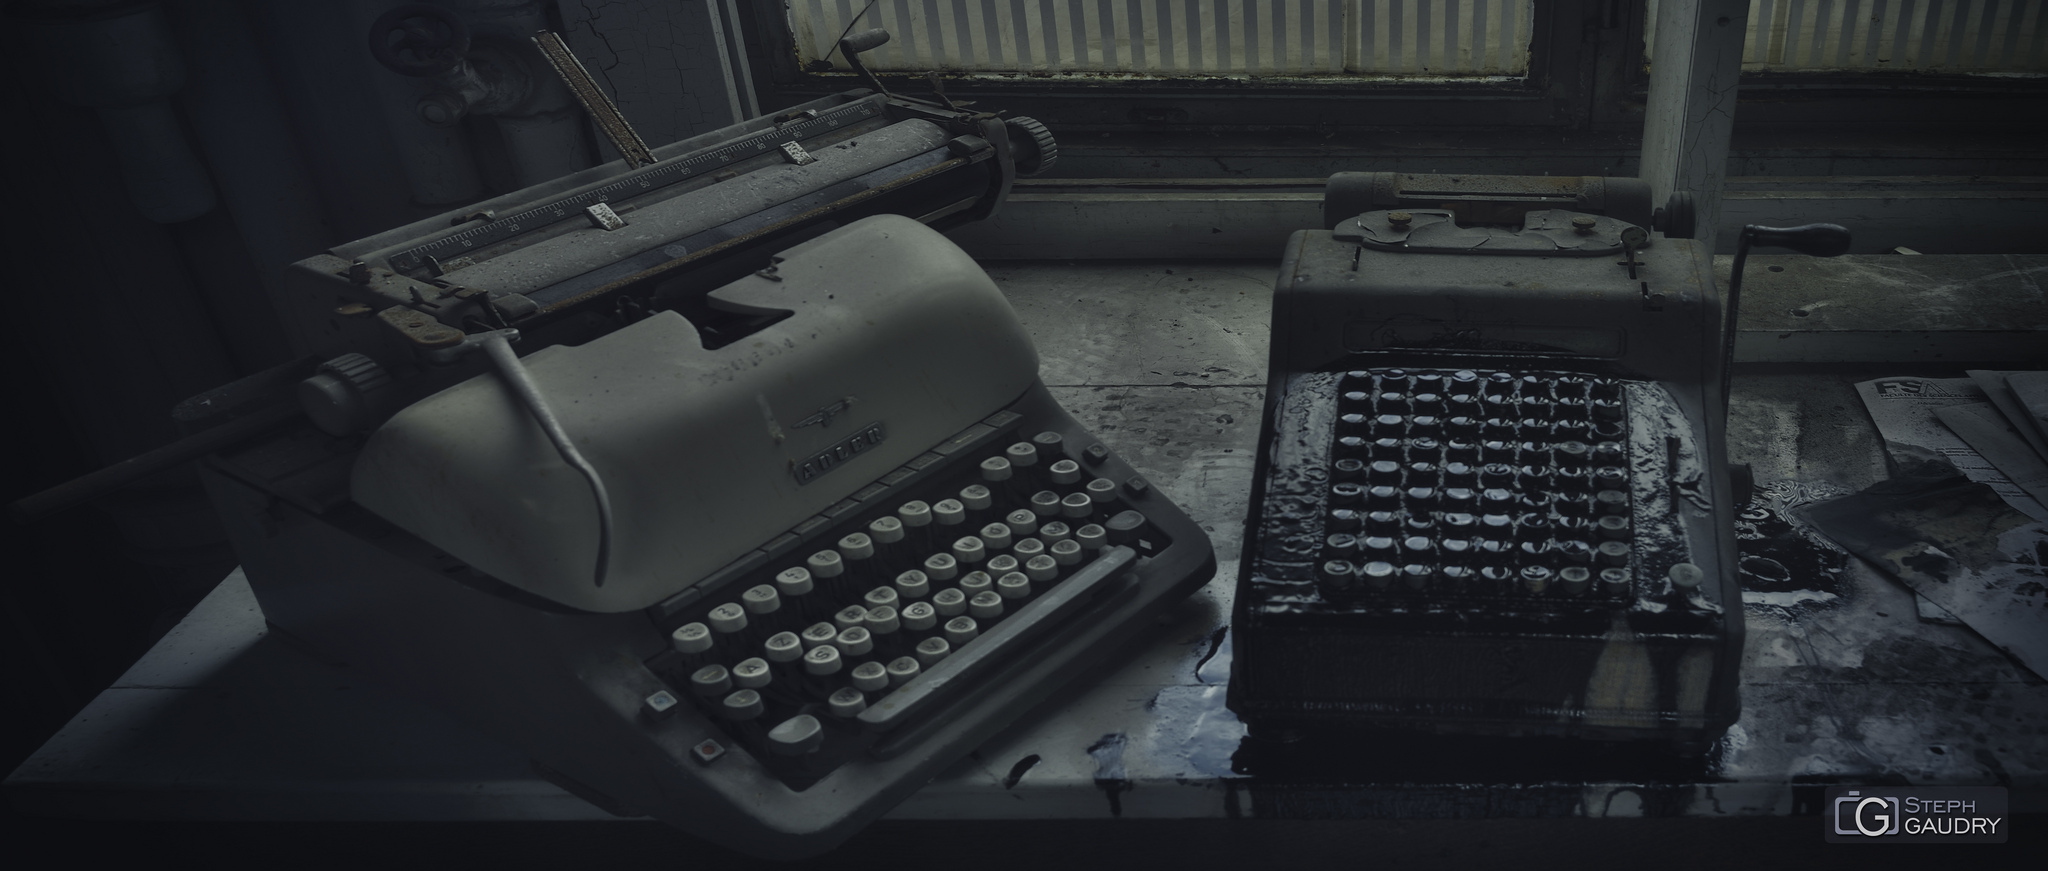 Adler typewriter [Klicken Sie hier, um die Diashow zu starten]